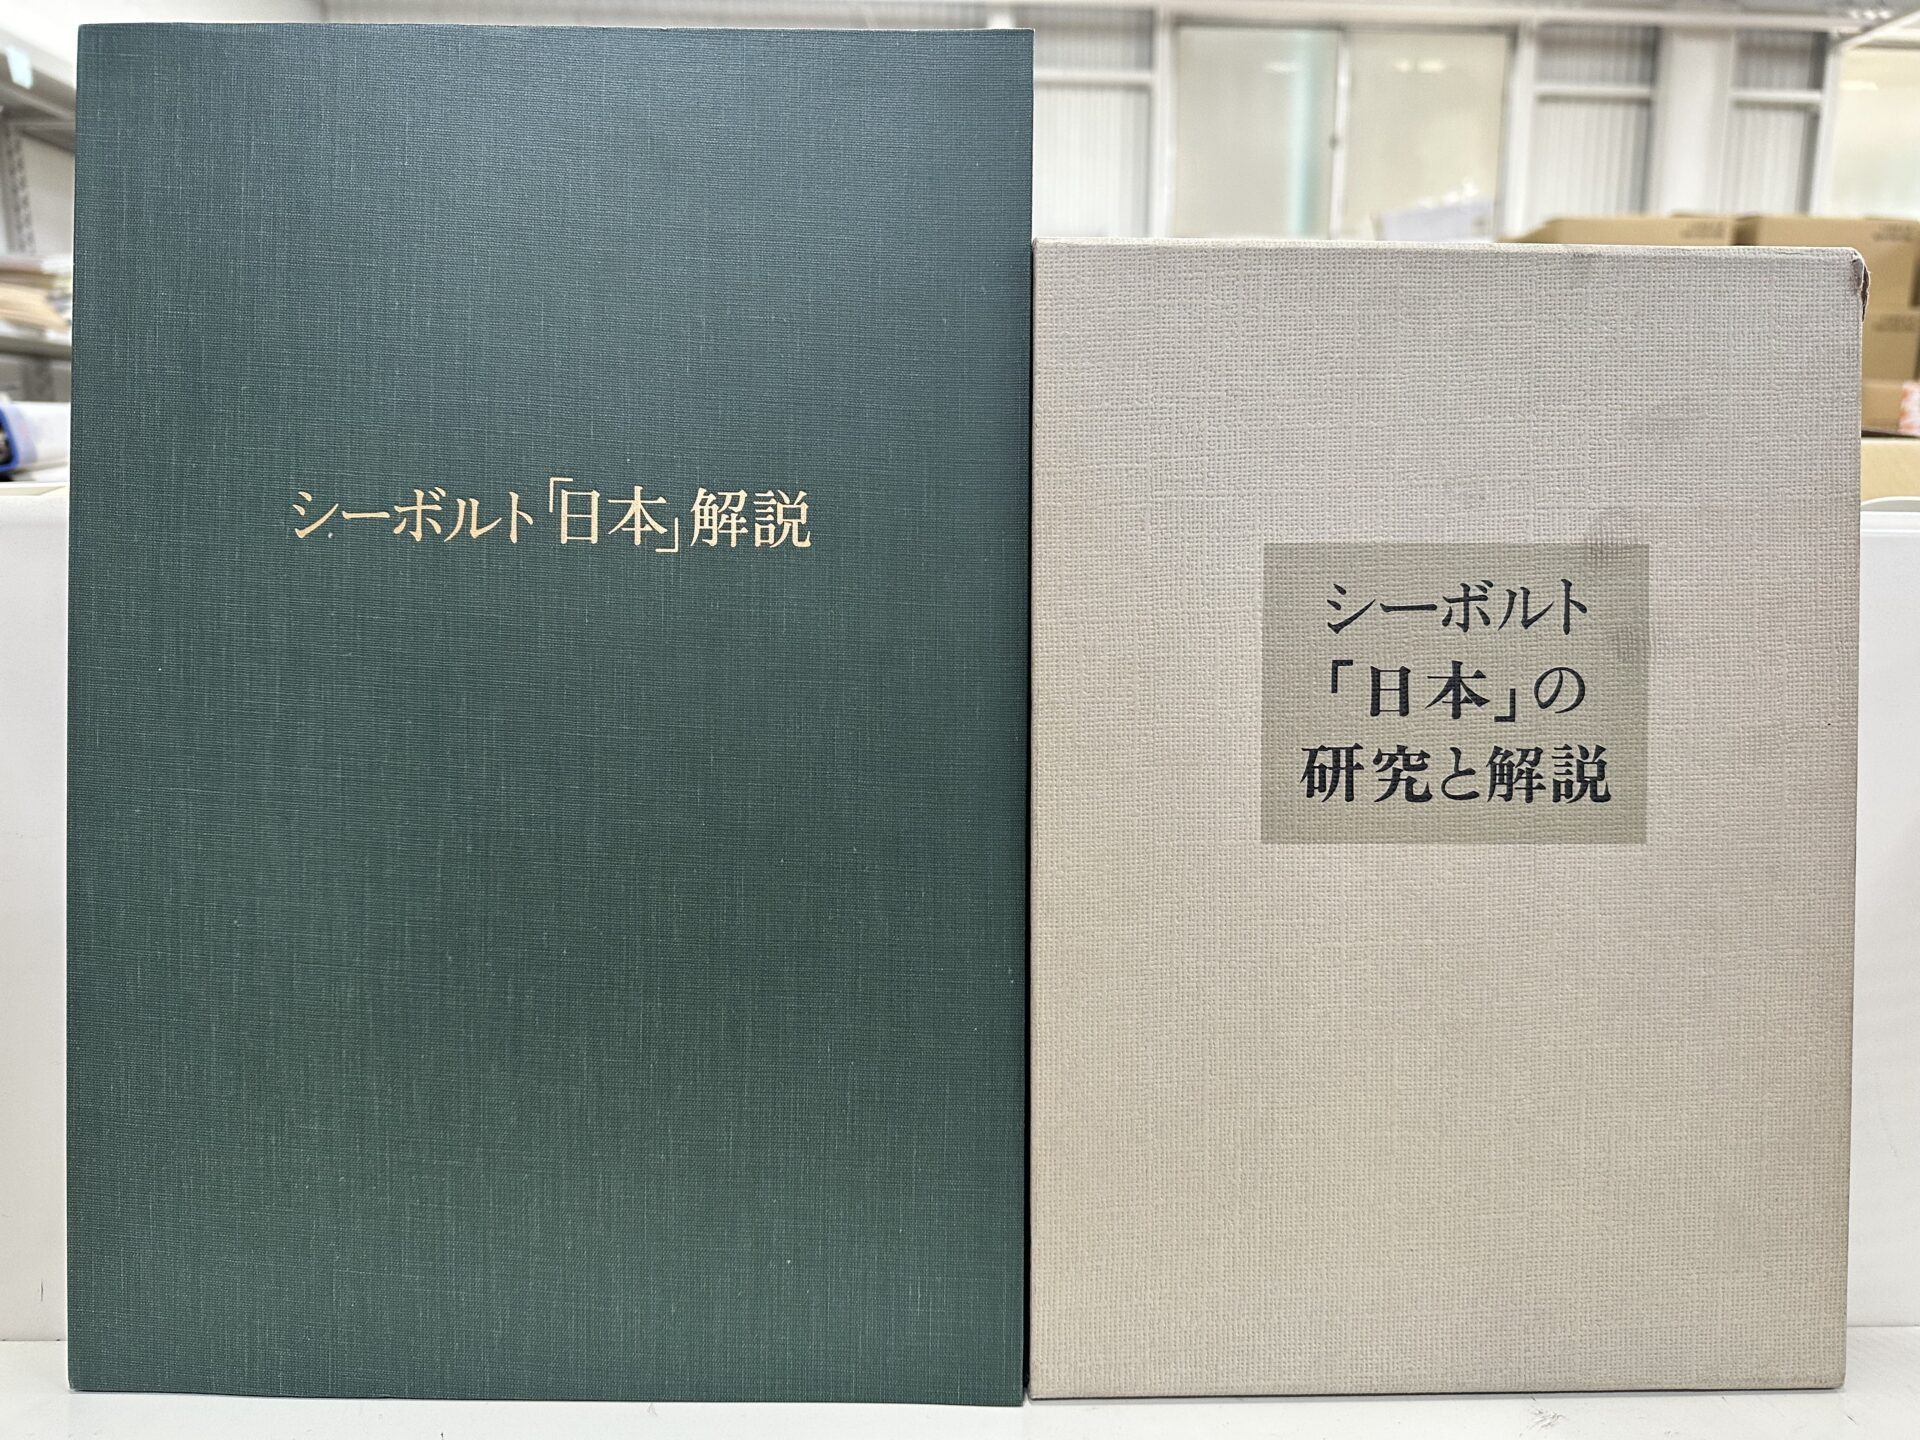 シーボルト「日本動物誌(FAUNA JAPONICA)」復刻版を古書買取査定